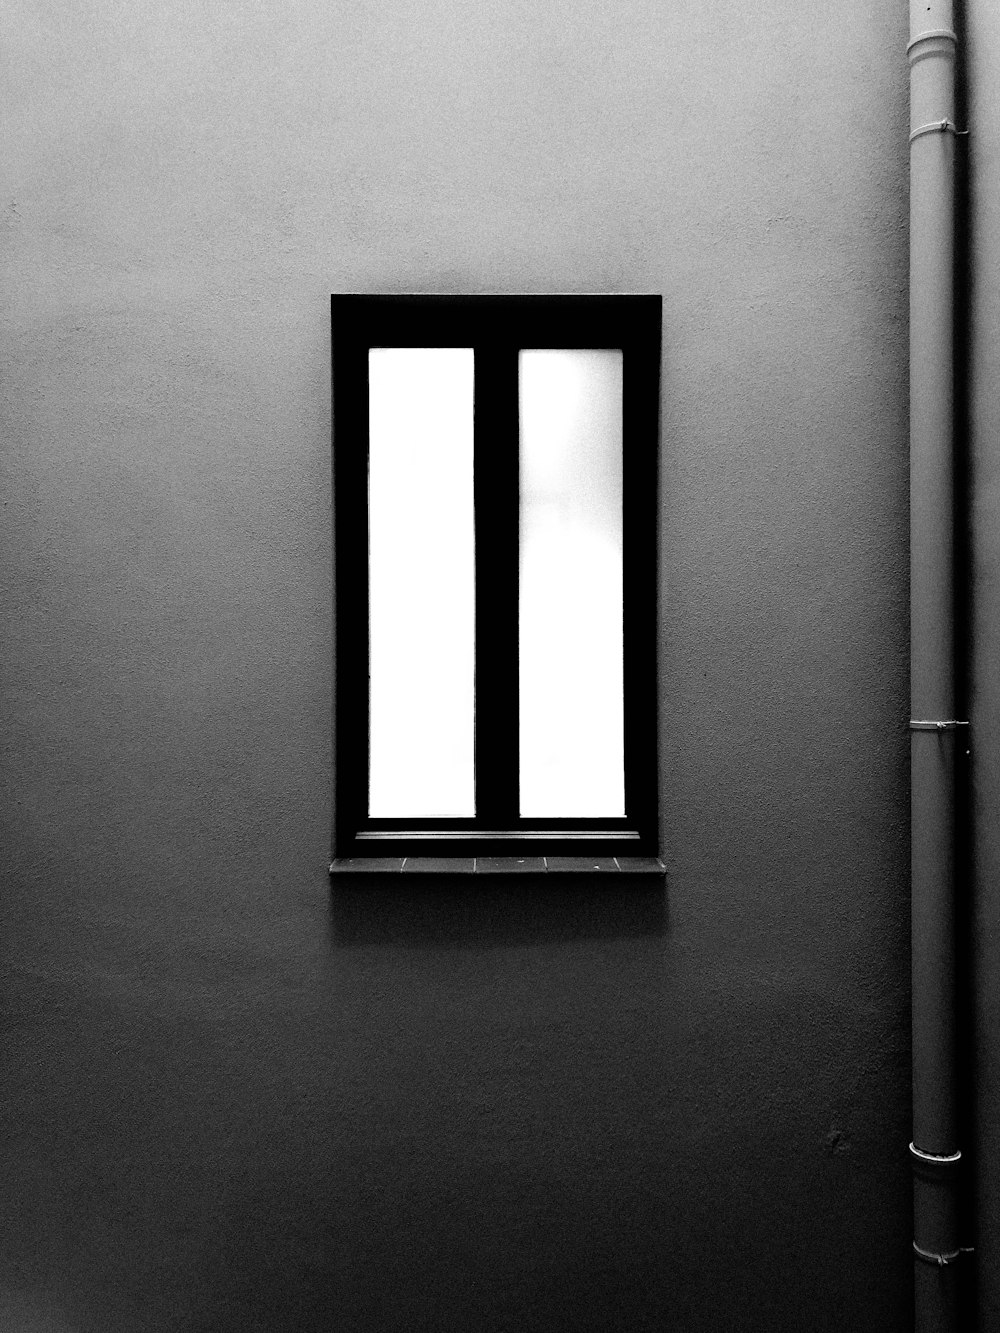 壁の近くの閉じた黒いフレームの窓